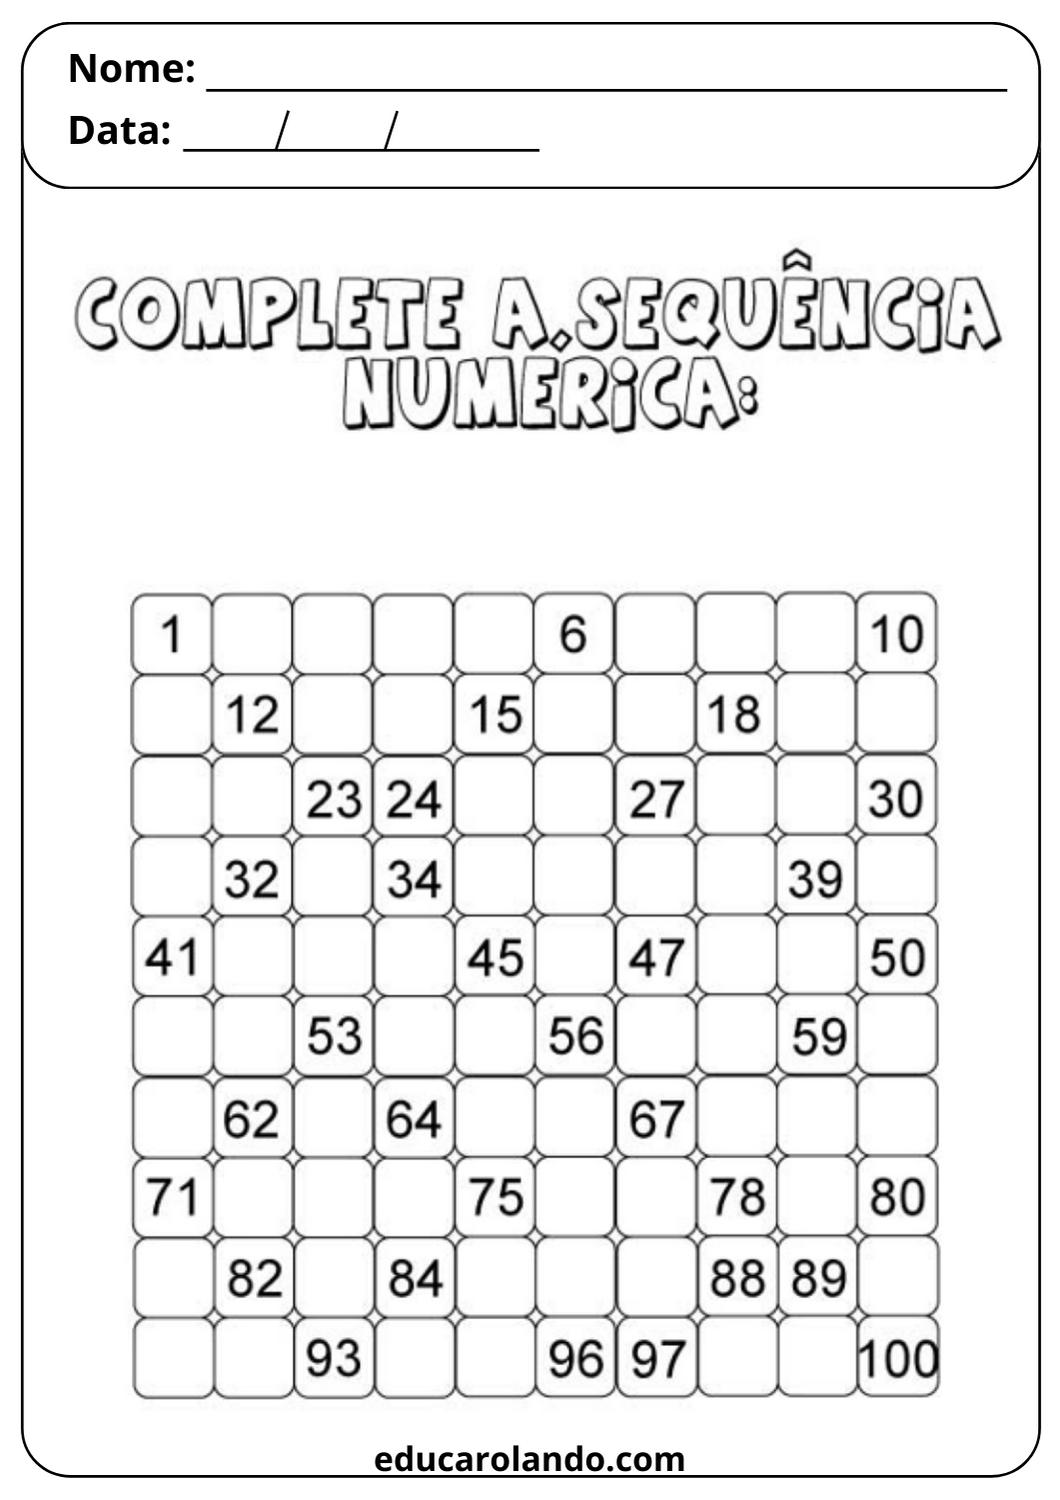 Complete a sequência numérica (2)